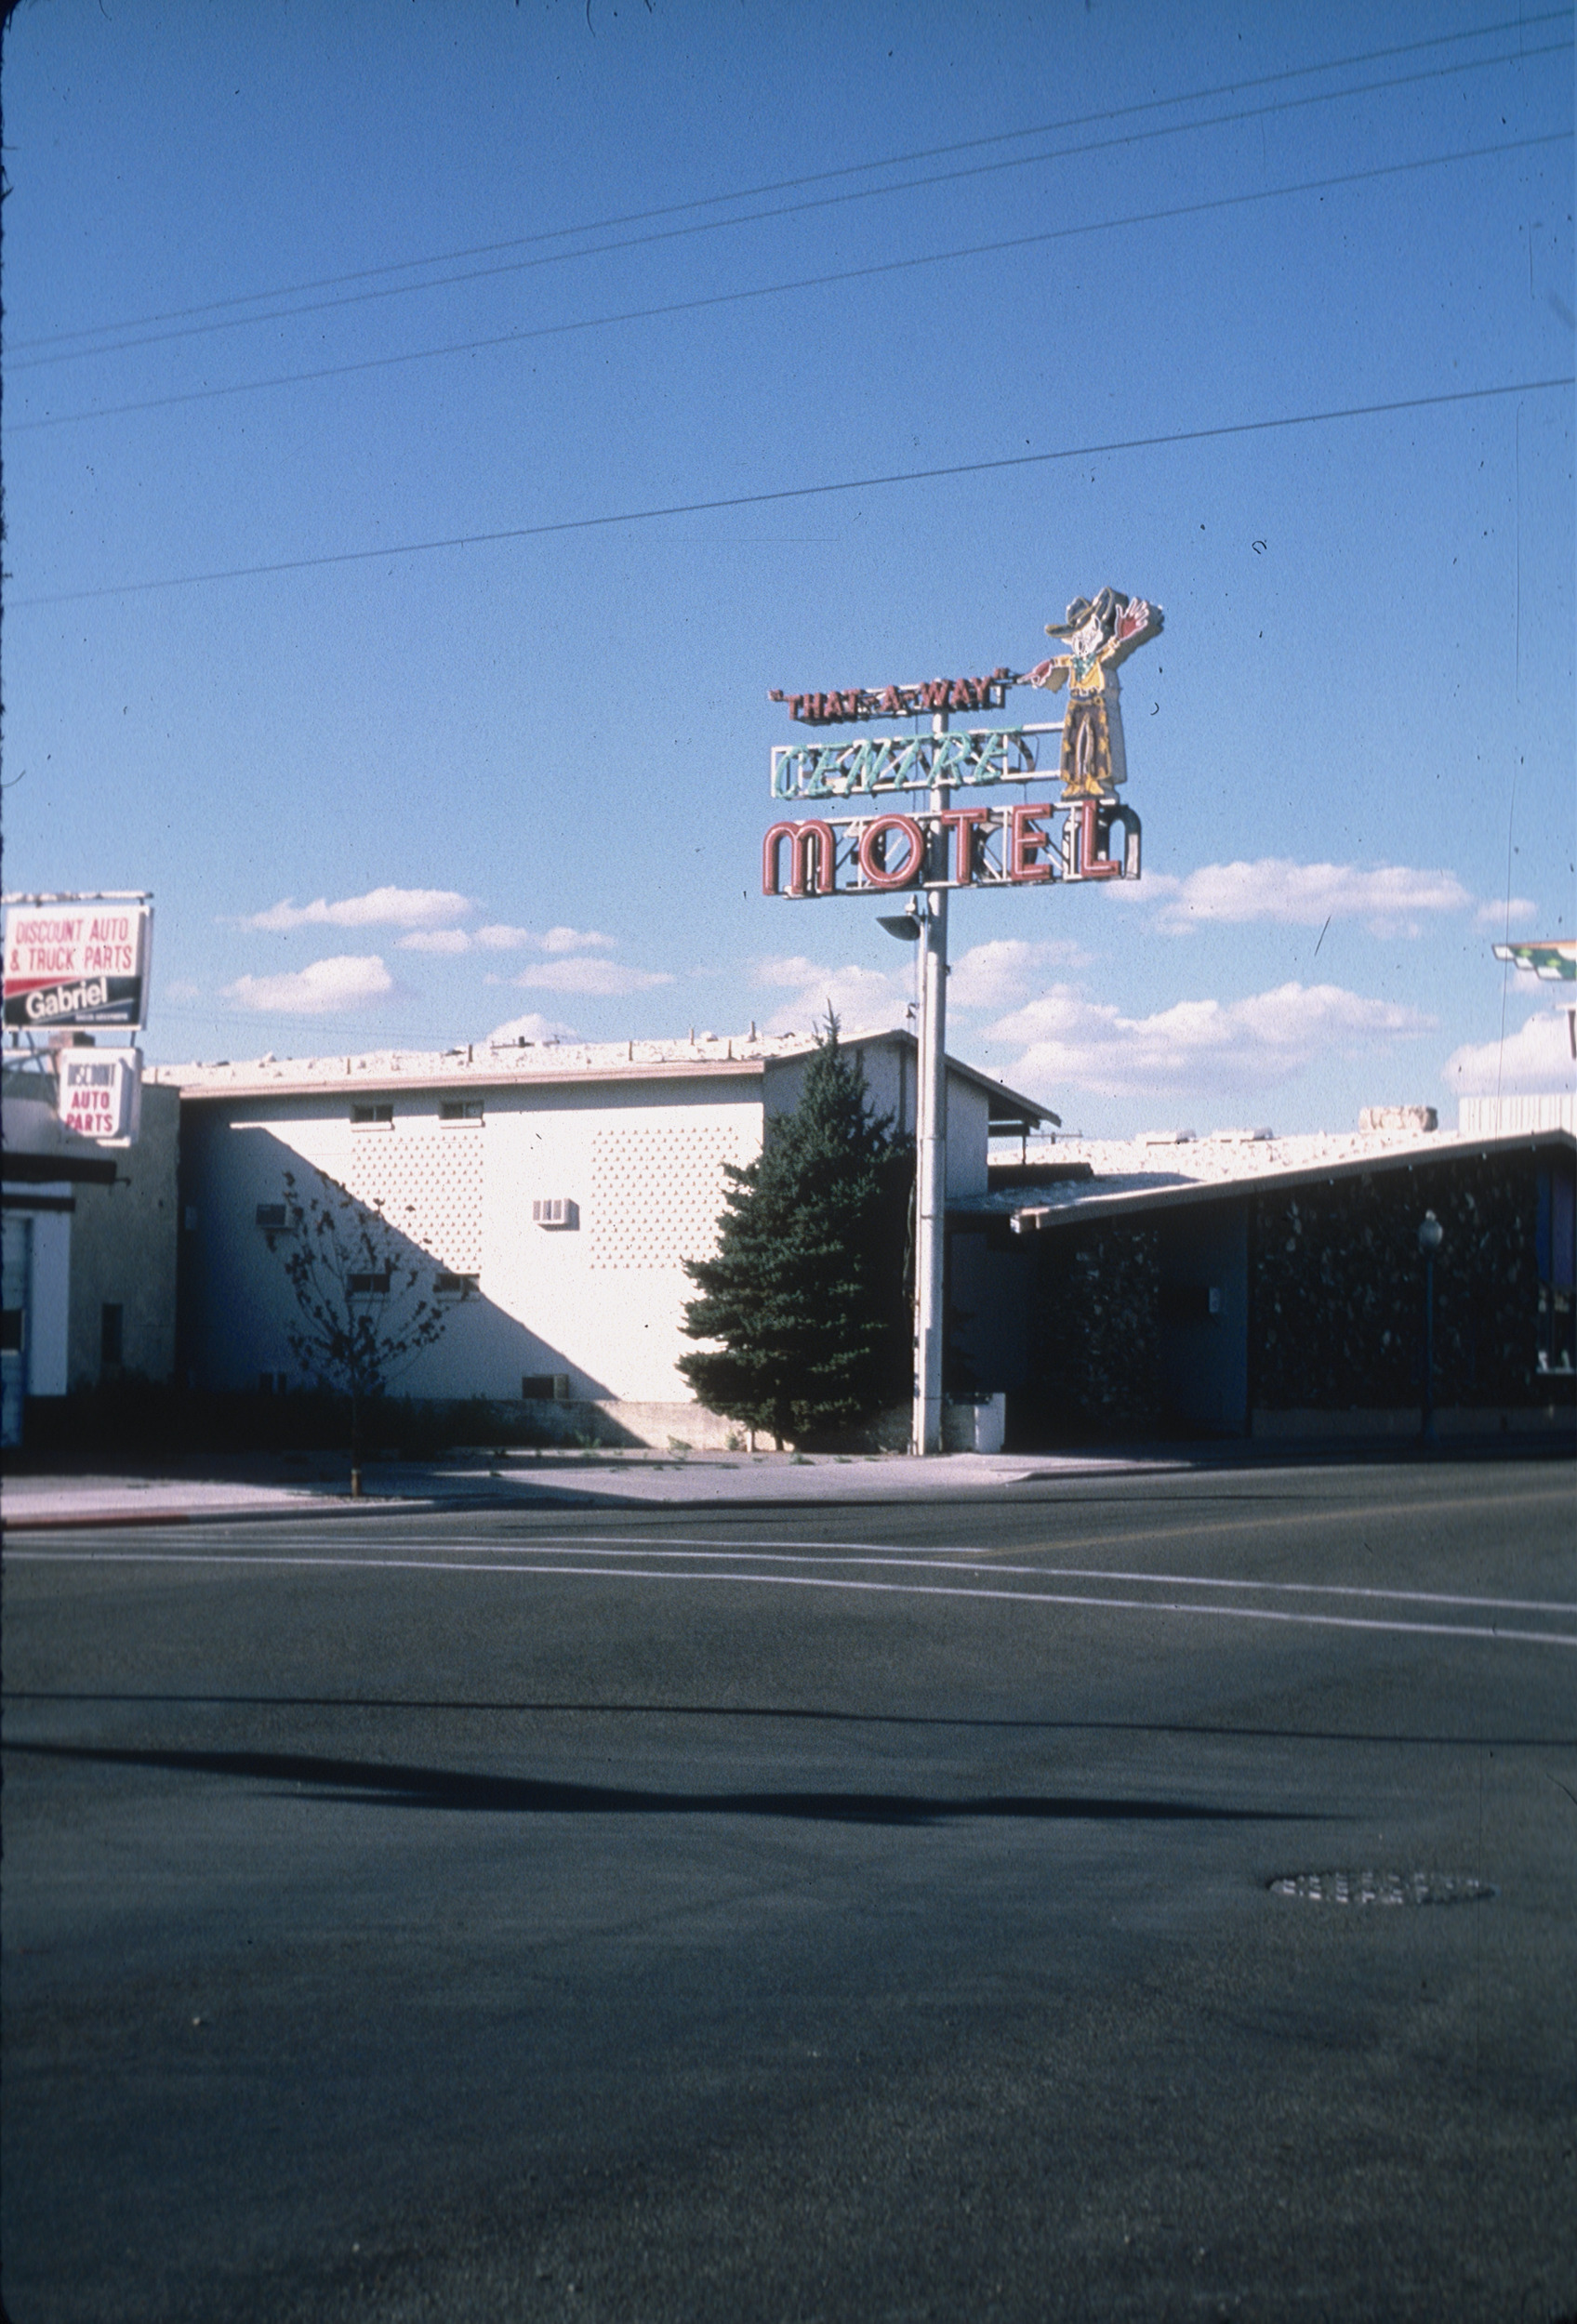 Slide of Centre Motel, Elko, Nevada, 1986